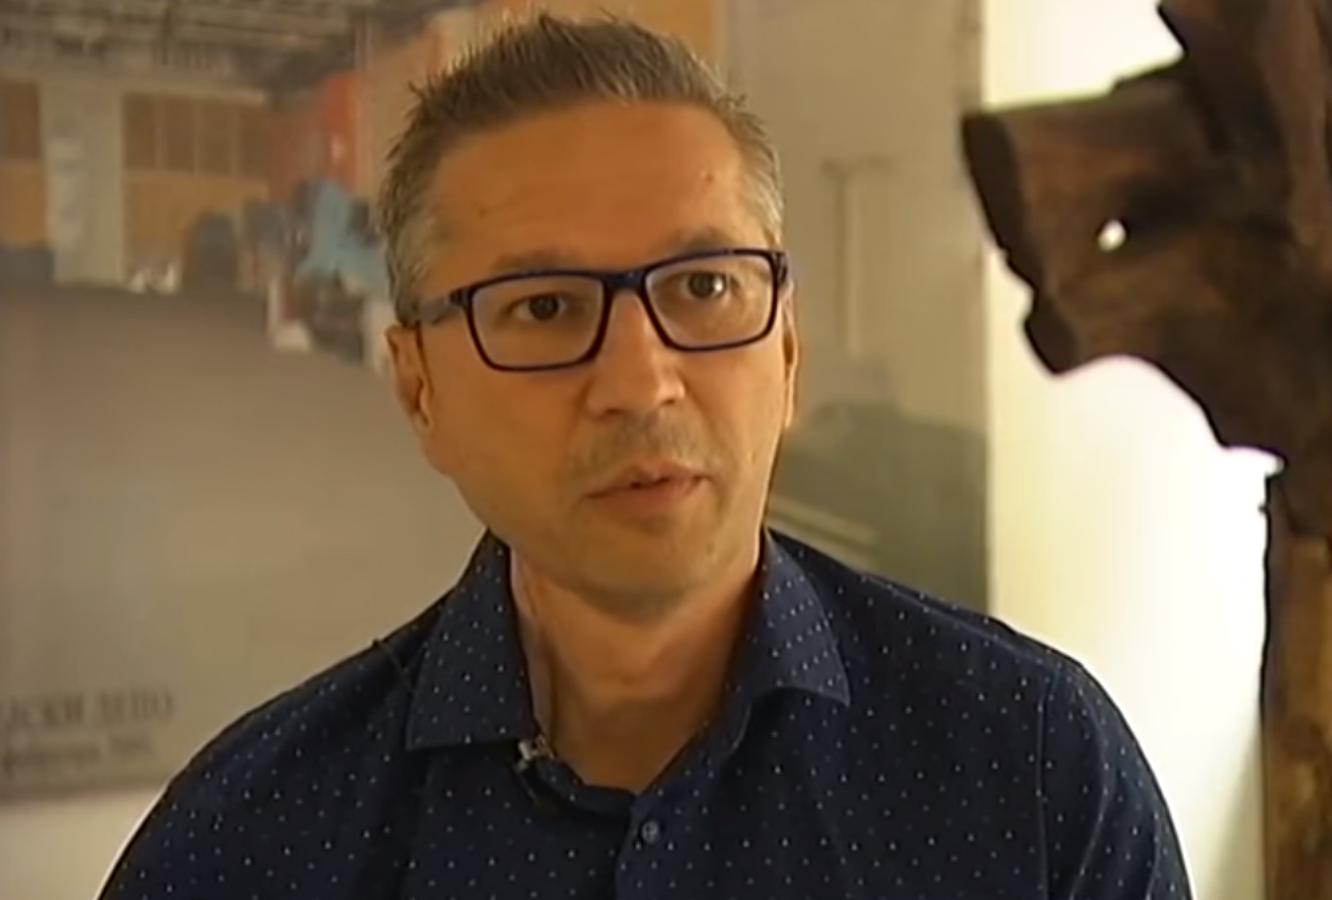  Dejan Pantelić više neće raditi kao voditelj, oprostio se od gledalaca u emisiji  